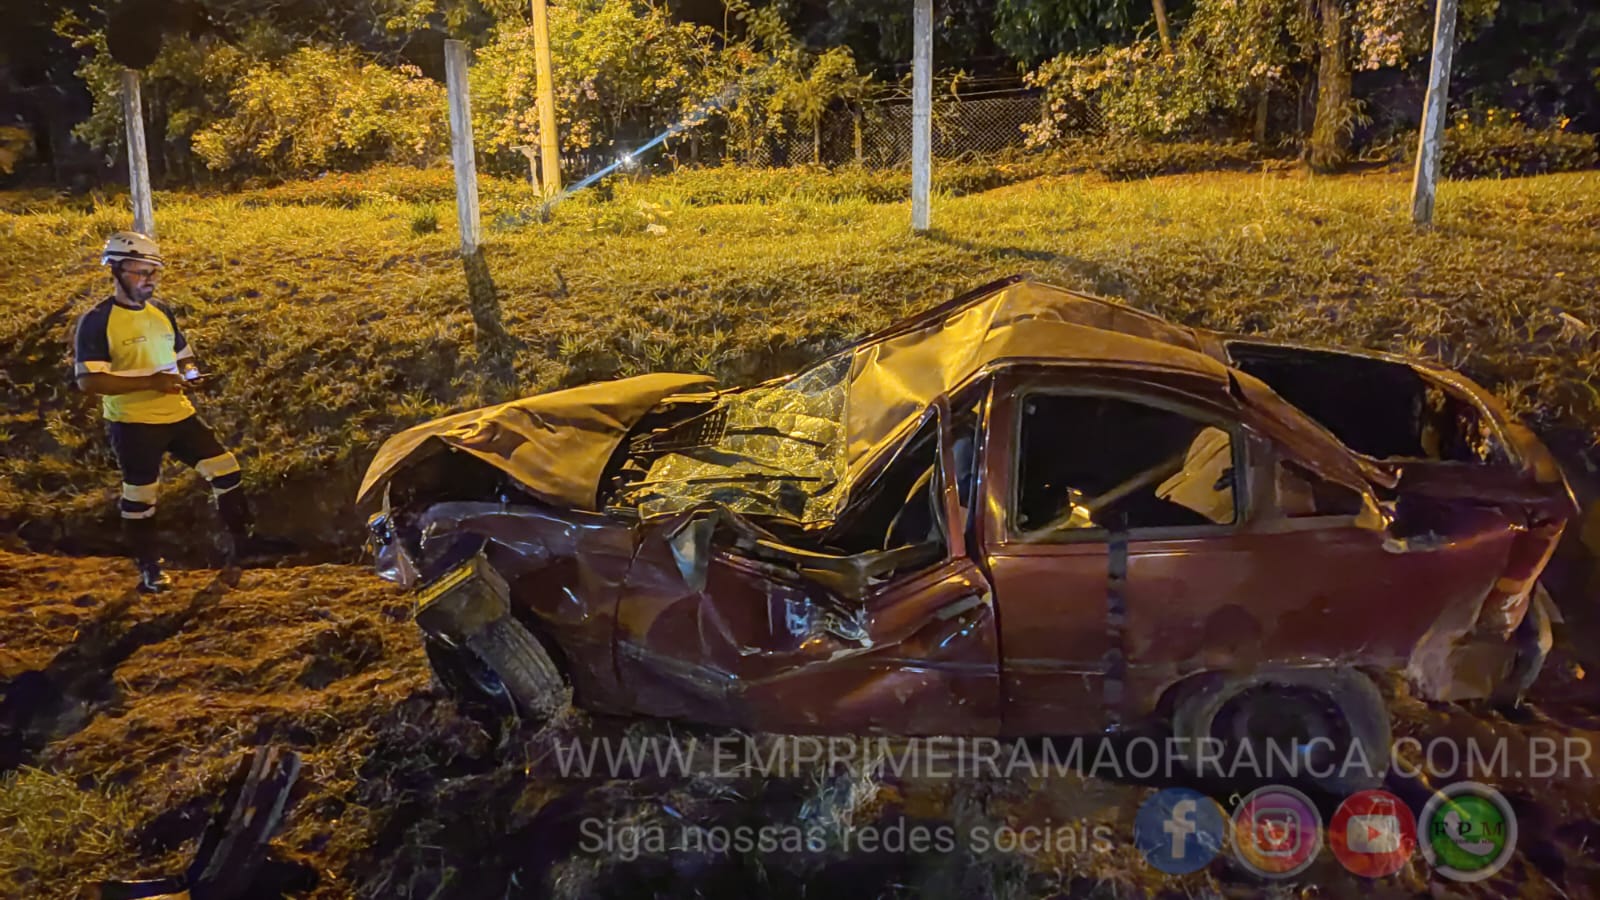 Motorista e passageiro saem praticamente ilesos após um grave acidente em rodovia de Franca